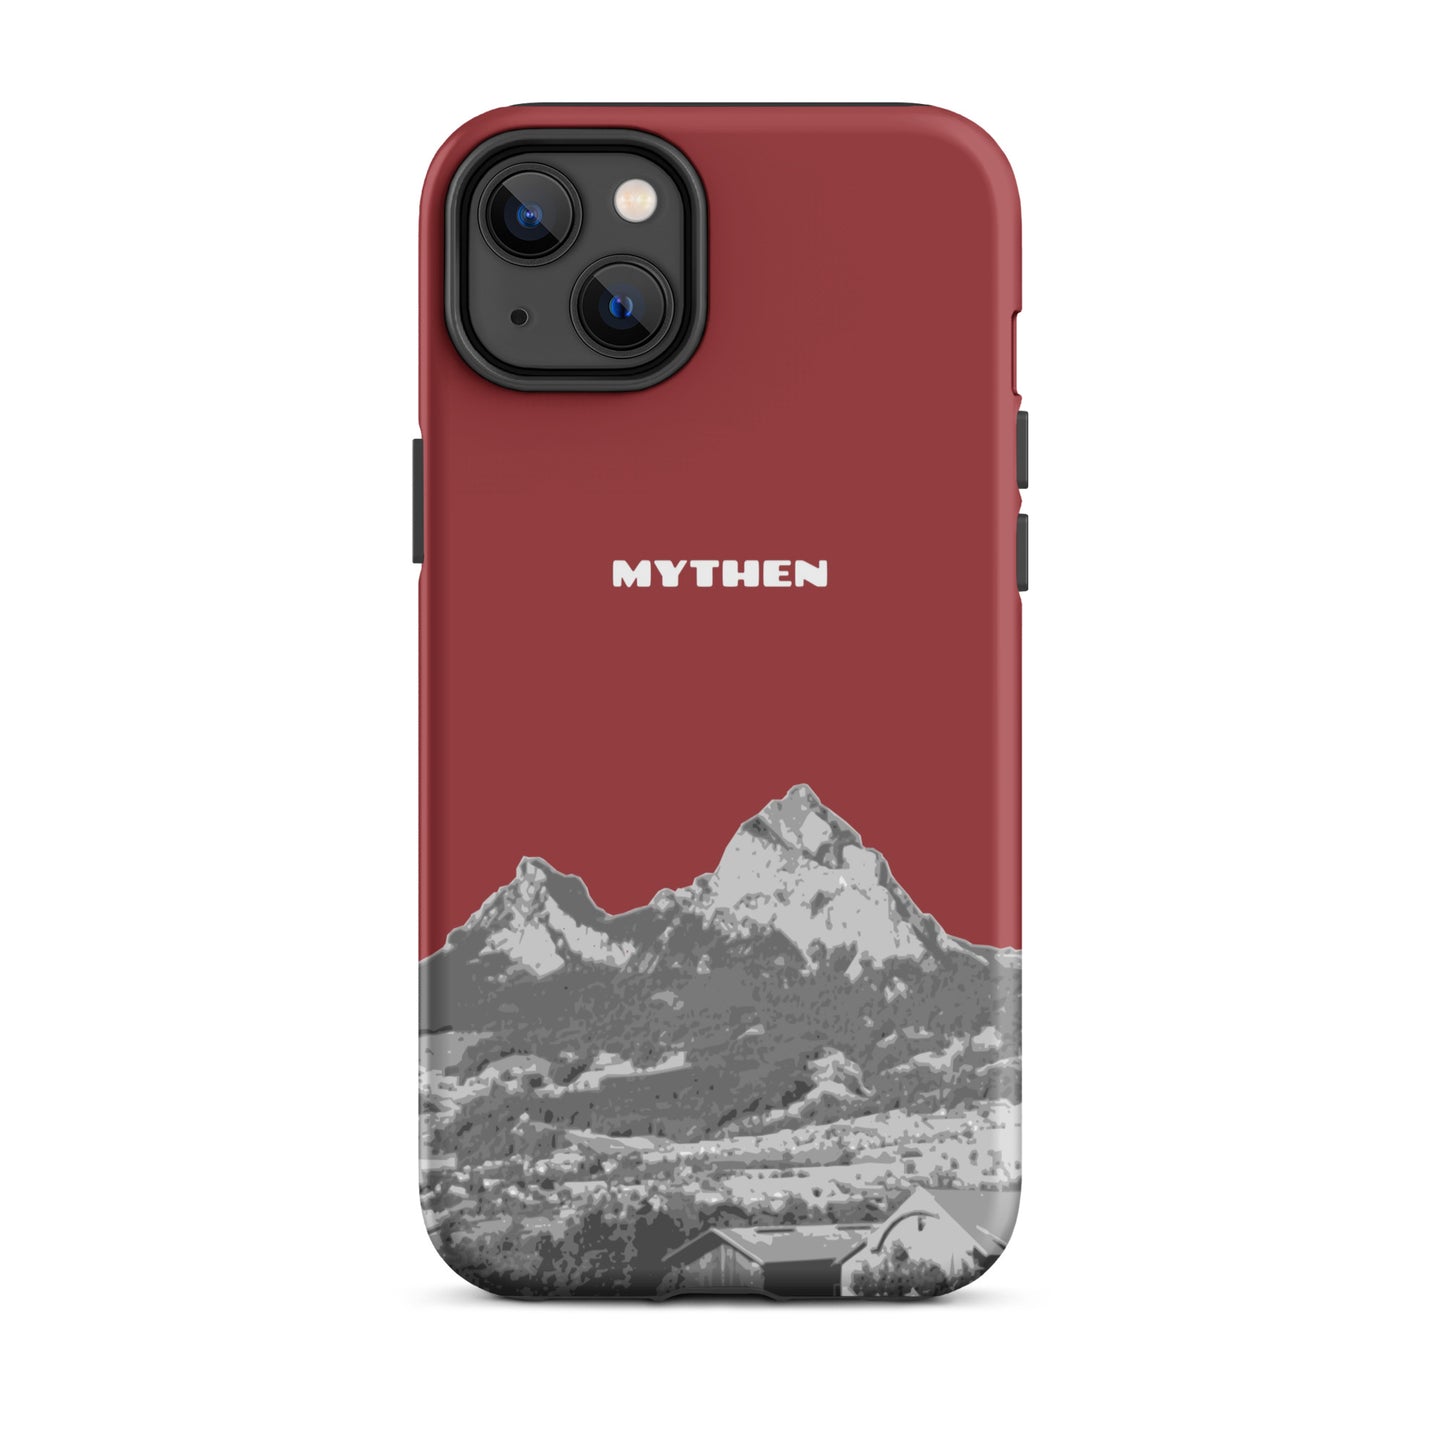 Hülle für das iPhone 14 Plus von Apple in der Farbe Rot, die den Grossen Mythen und den Kleinen Mythen bei Schwyz zeigt. 